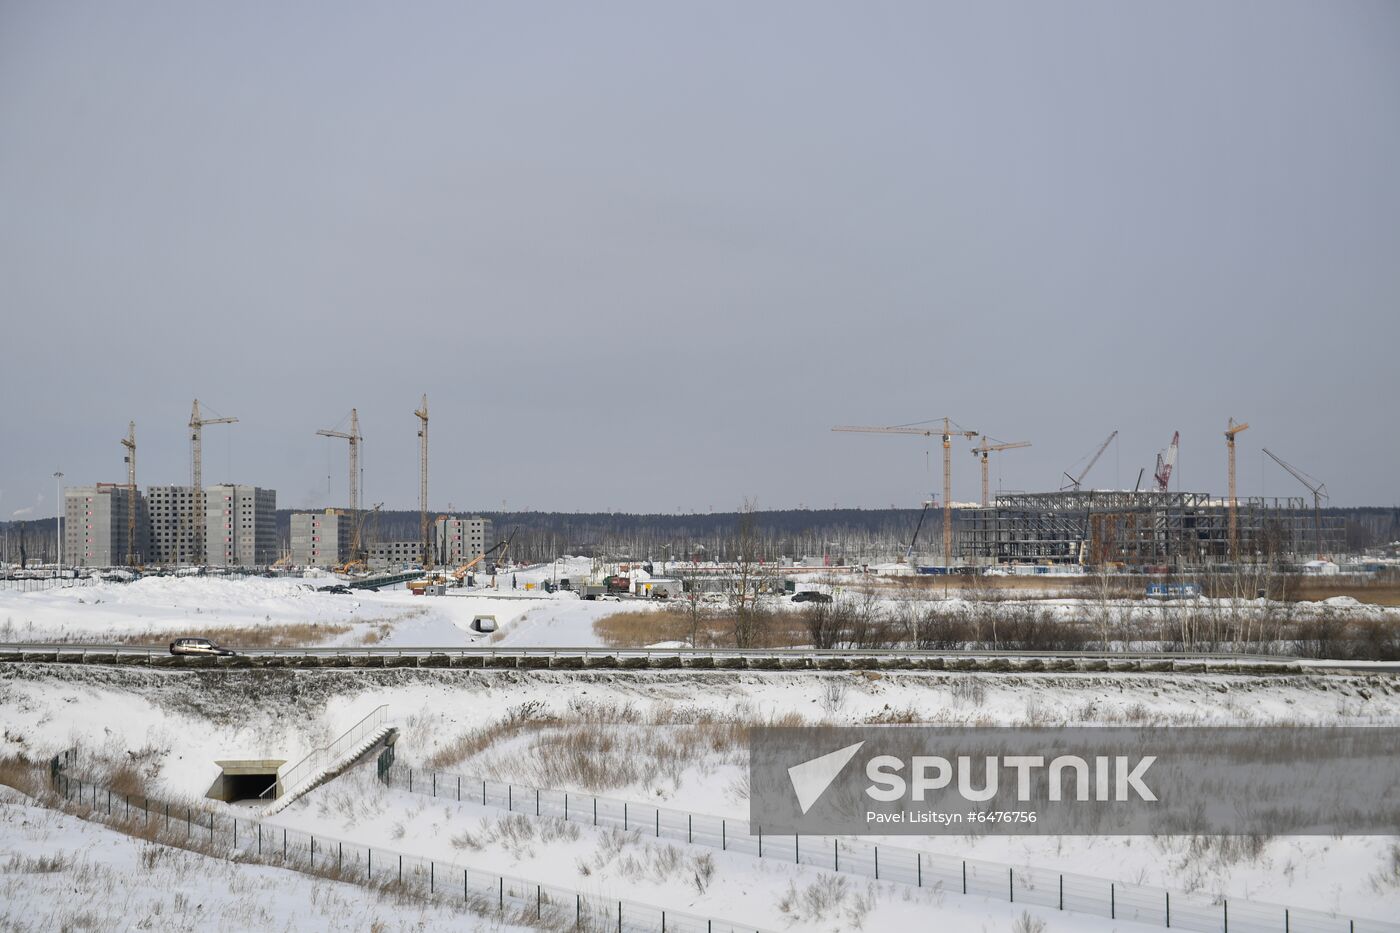 Russia Universiade Village Construction